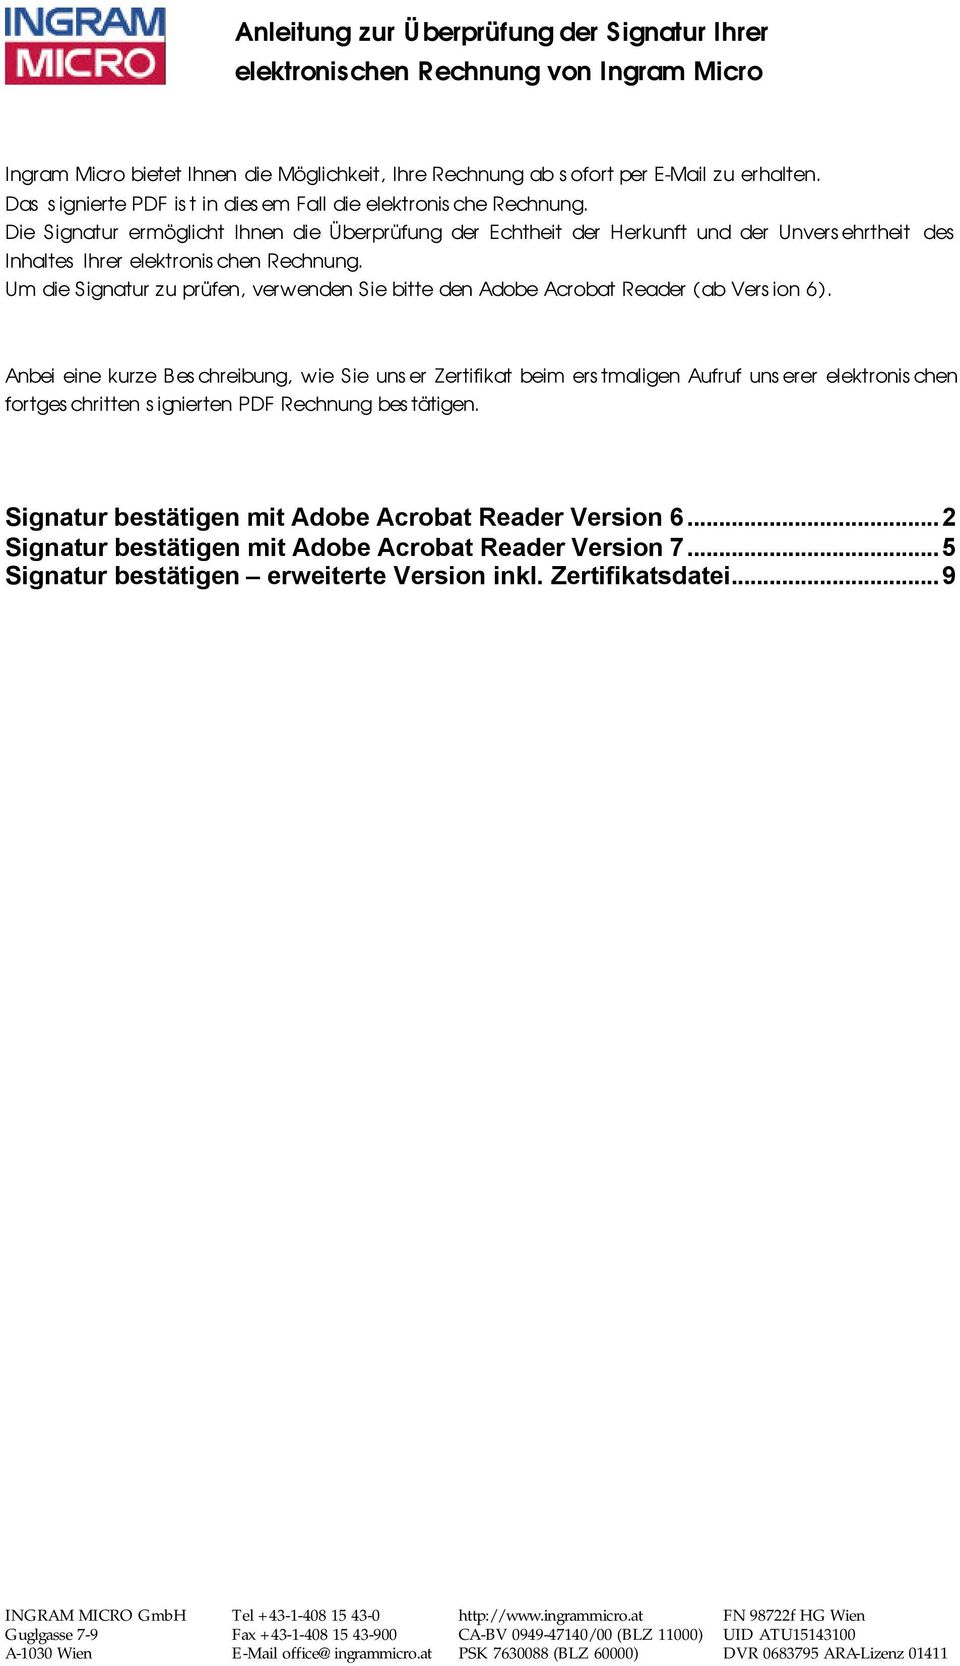 Um die Signatur zu prüfen, verwenden Sie bitte den Adobe Acrobat Reader (ab Version 6).